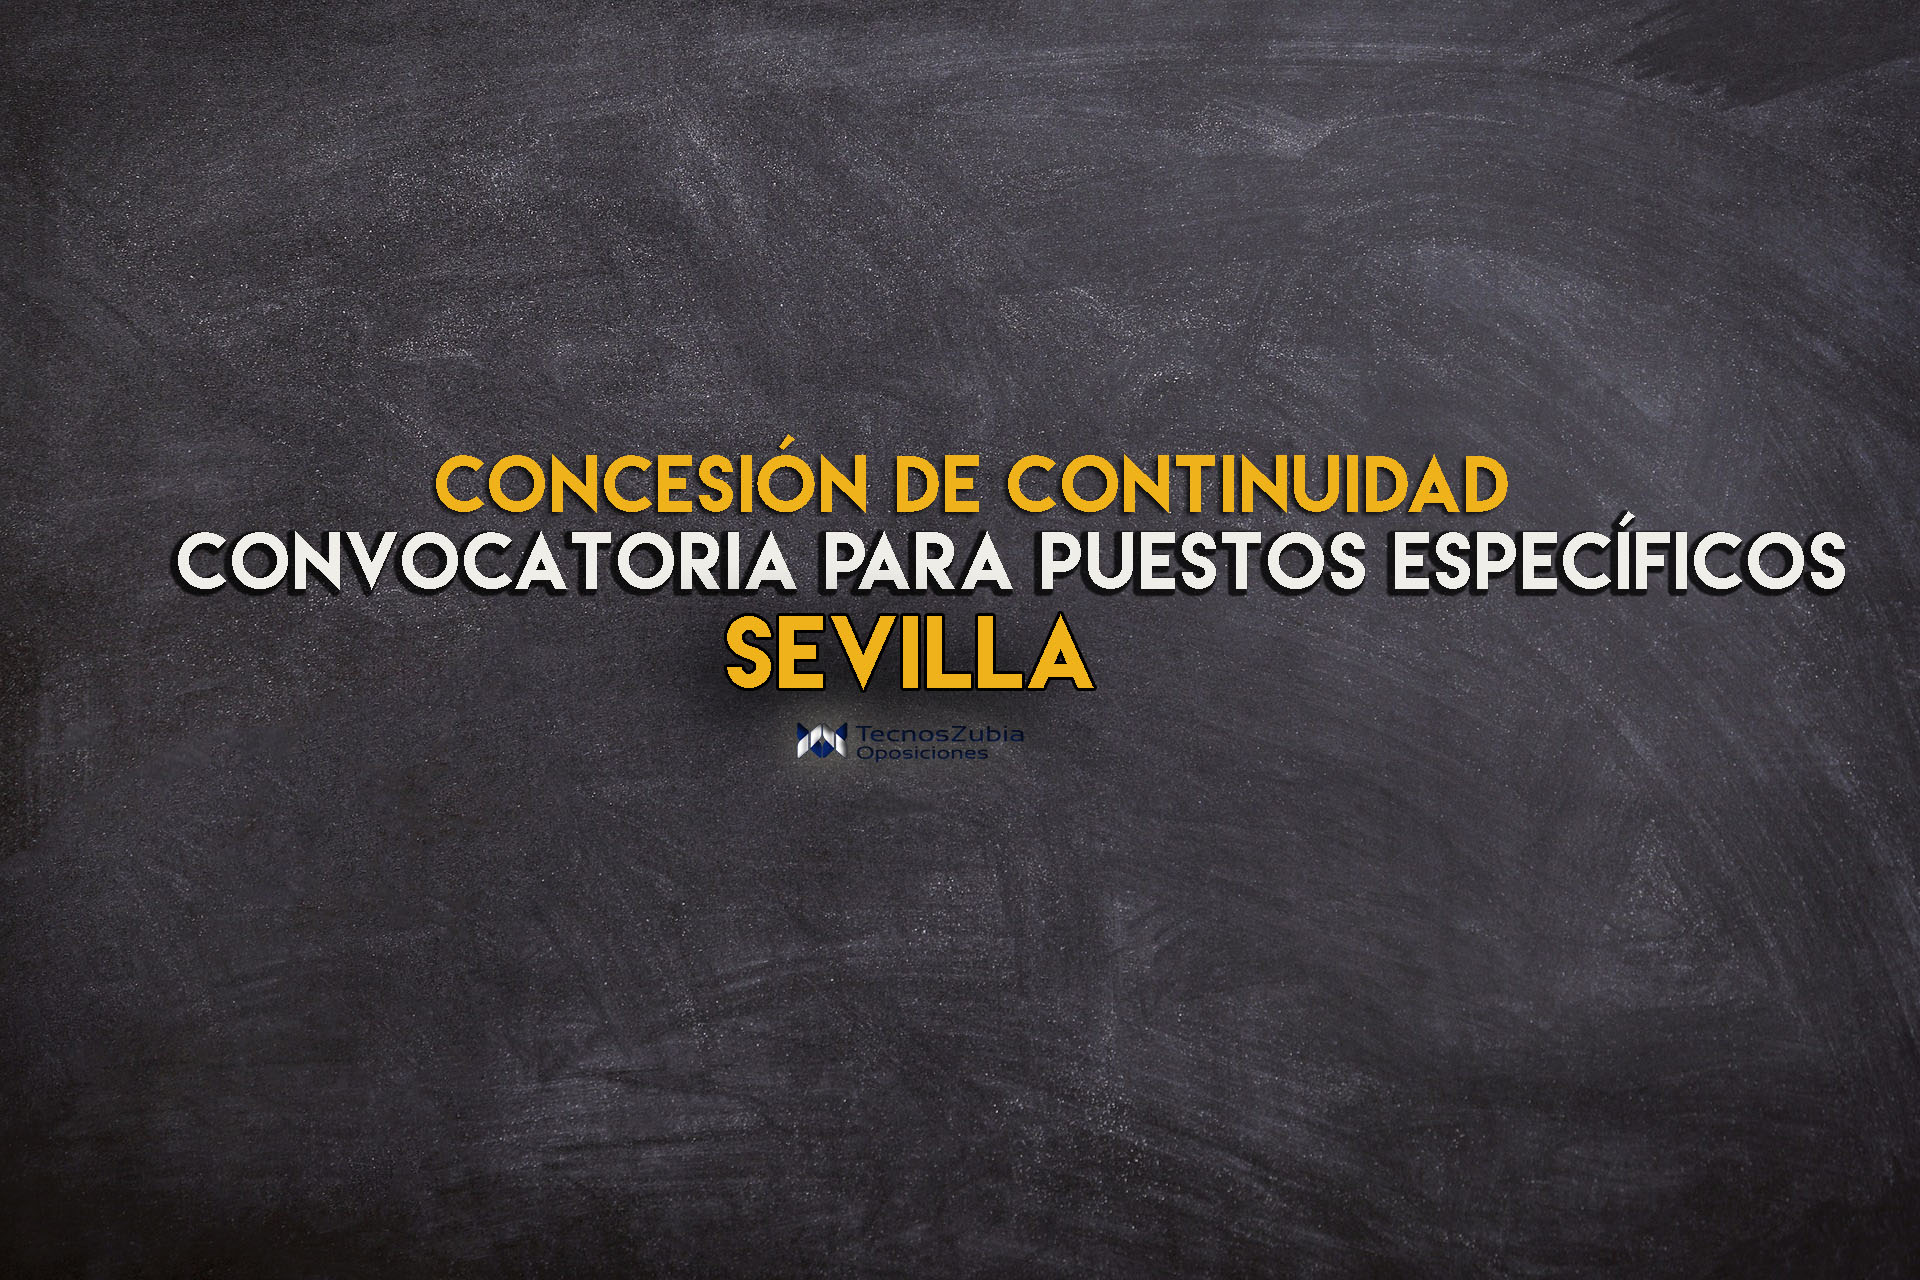 Concesión de continuidad Sevilla. Puestos específicos.